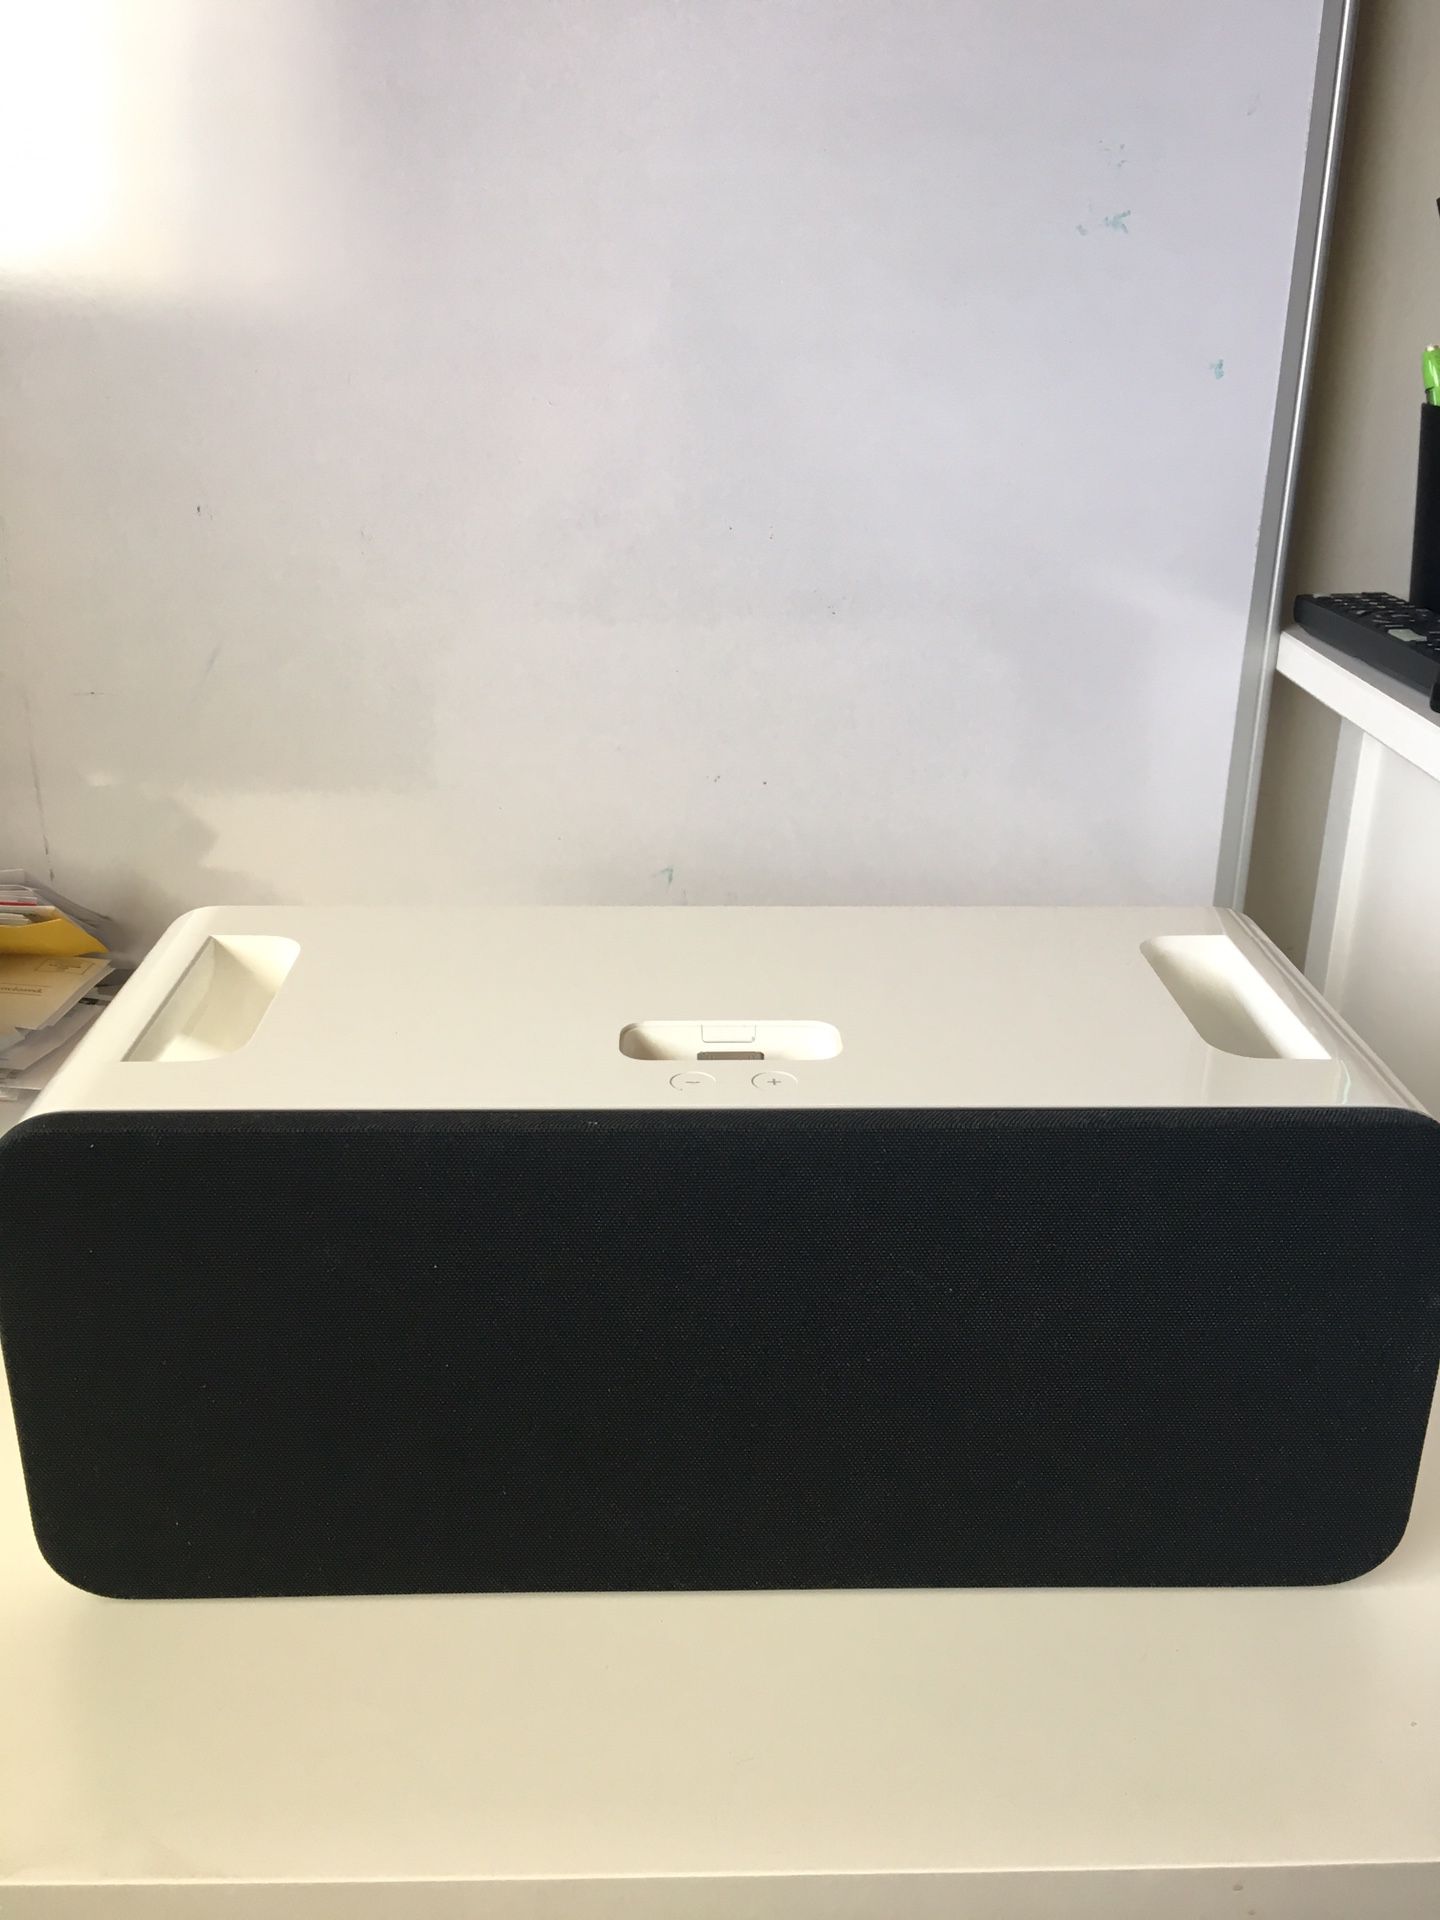 Apple hifi portable speaker dock